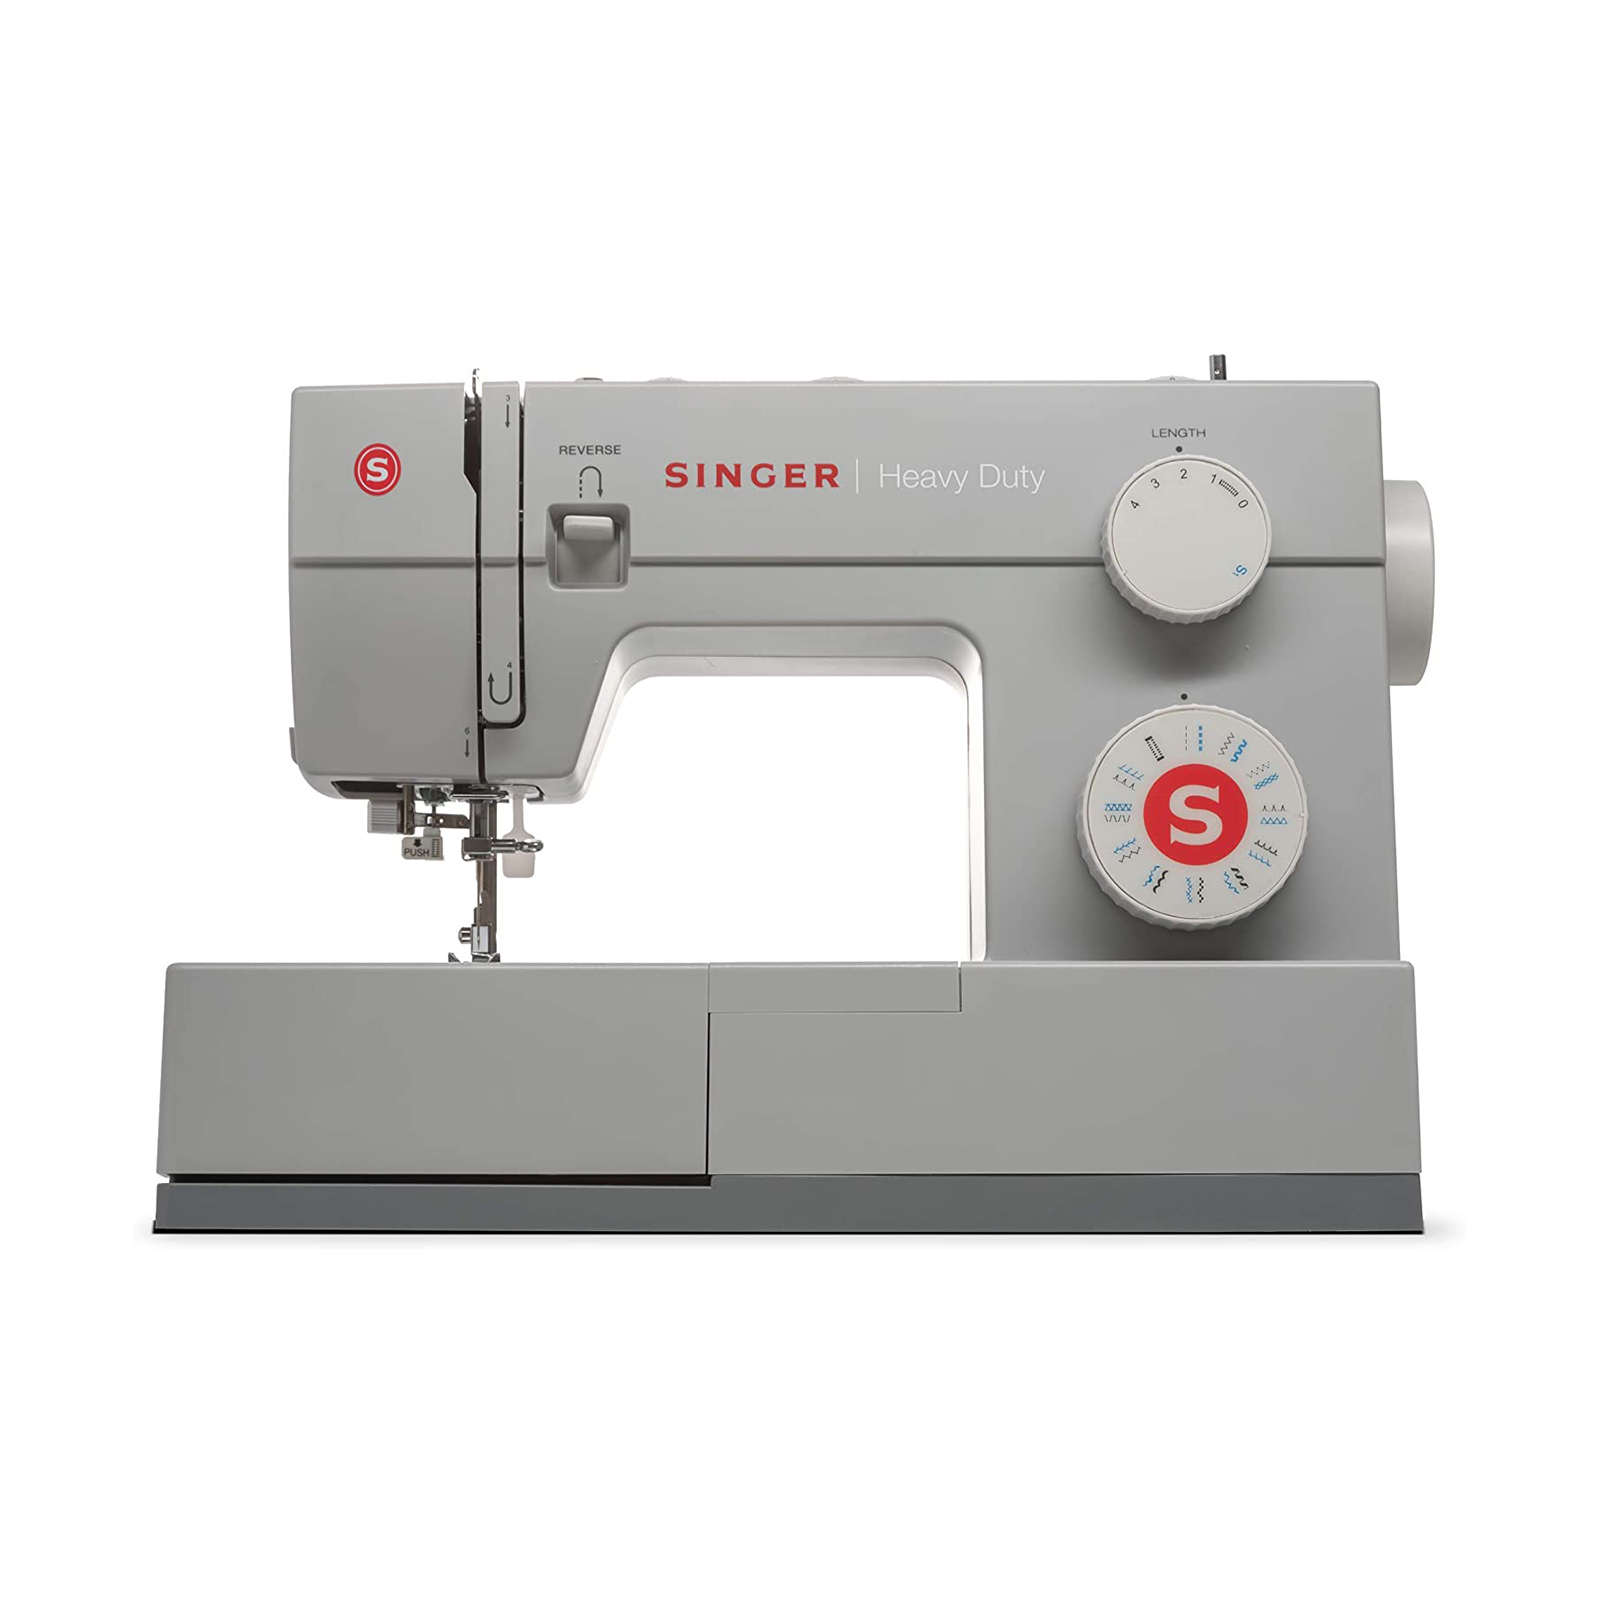 Singer M2100 Sewing Machine